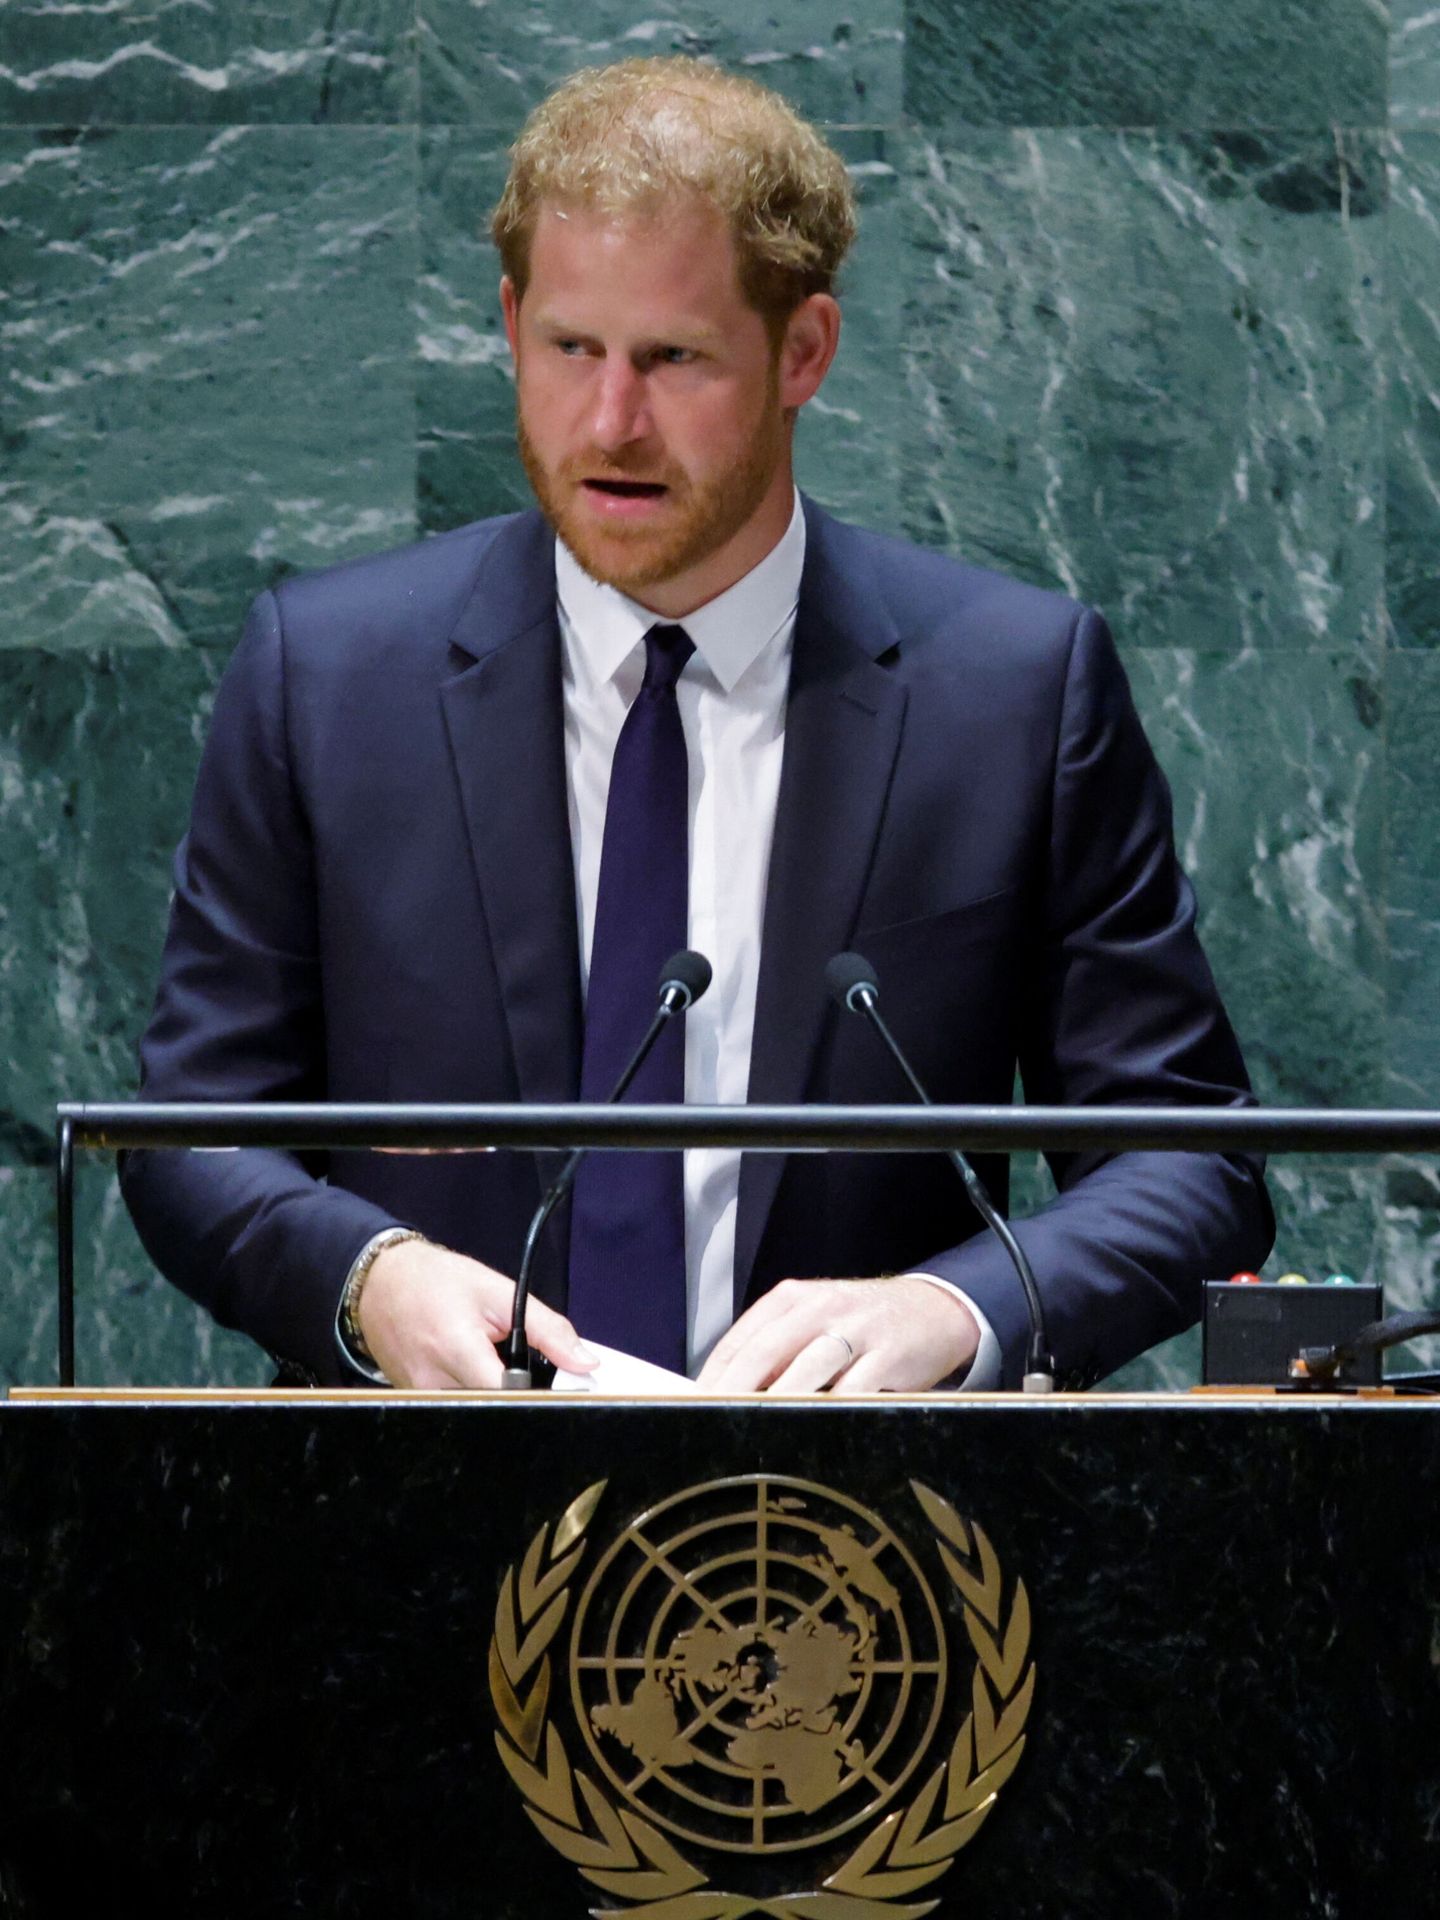 El príncipe Harry pronuncia su discurso en la Asamblea General de la ONU. (Reuters/Munoz)